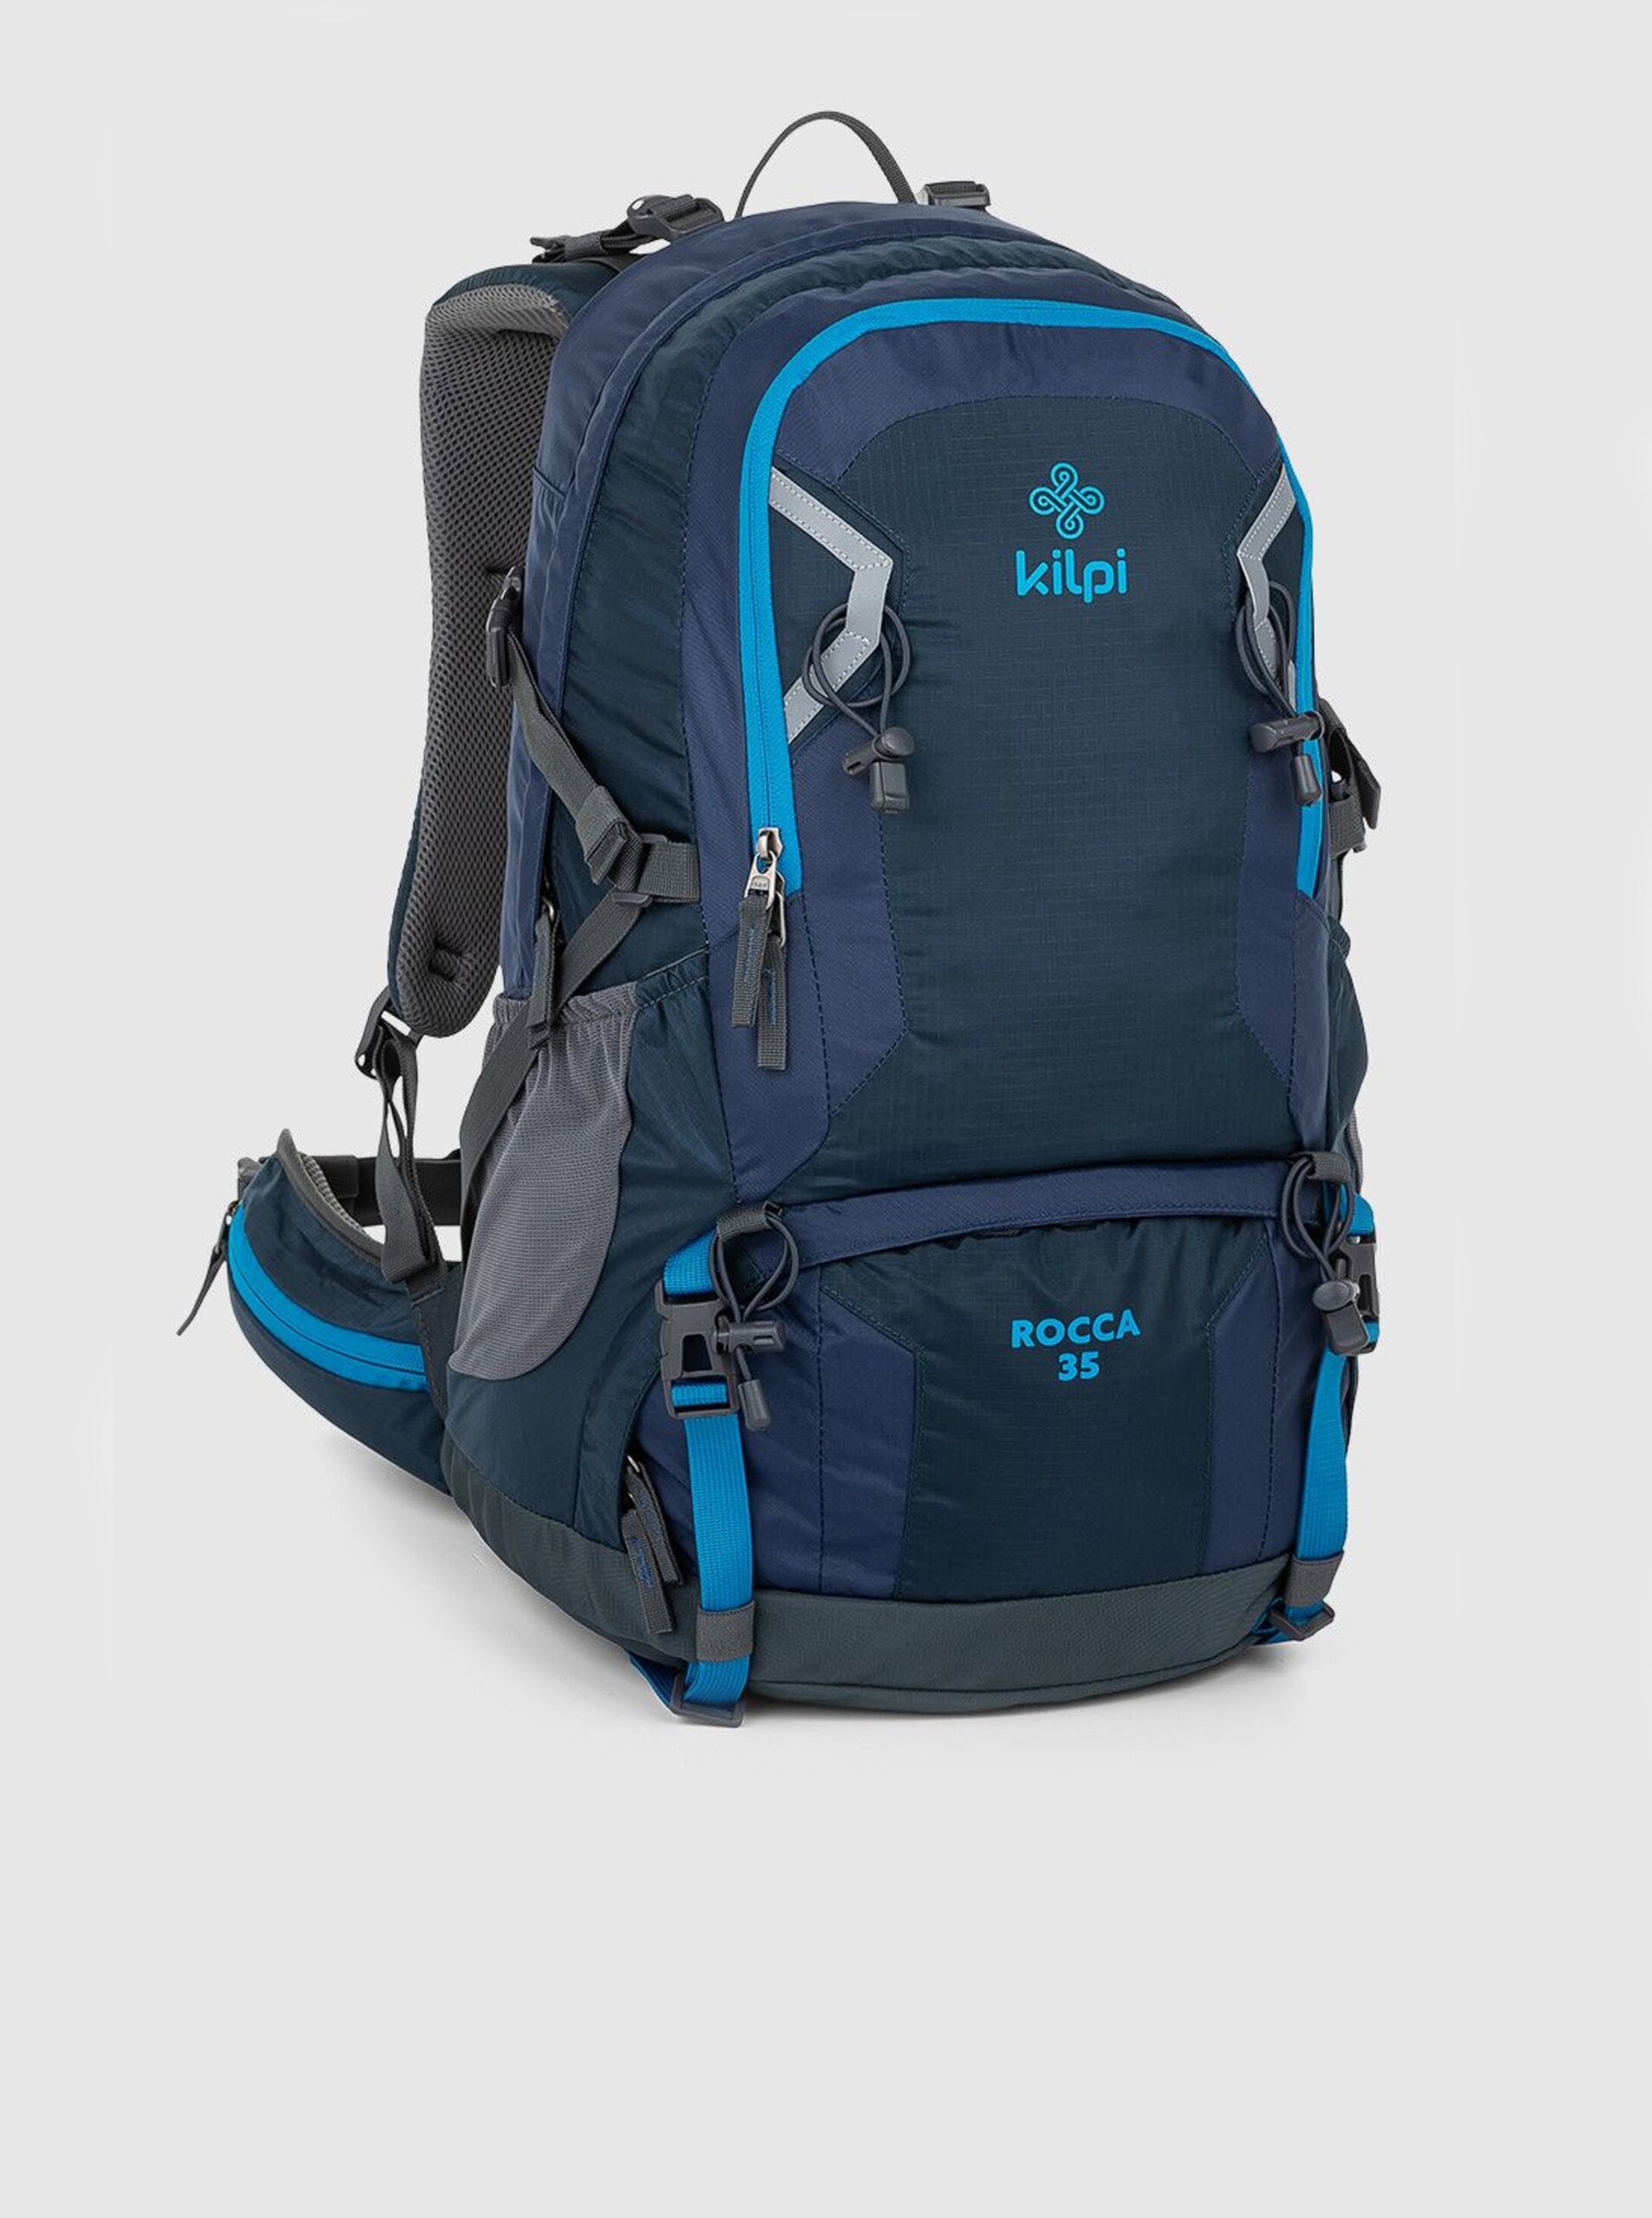 Levně Tmavě modrý unisex sportovní batoh Kilpi ROCCA (35 l)